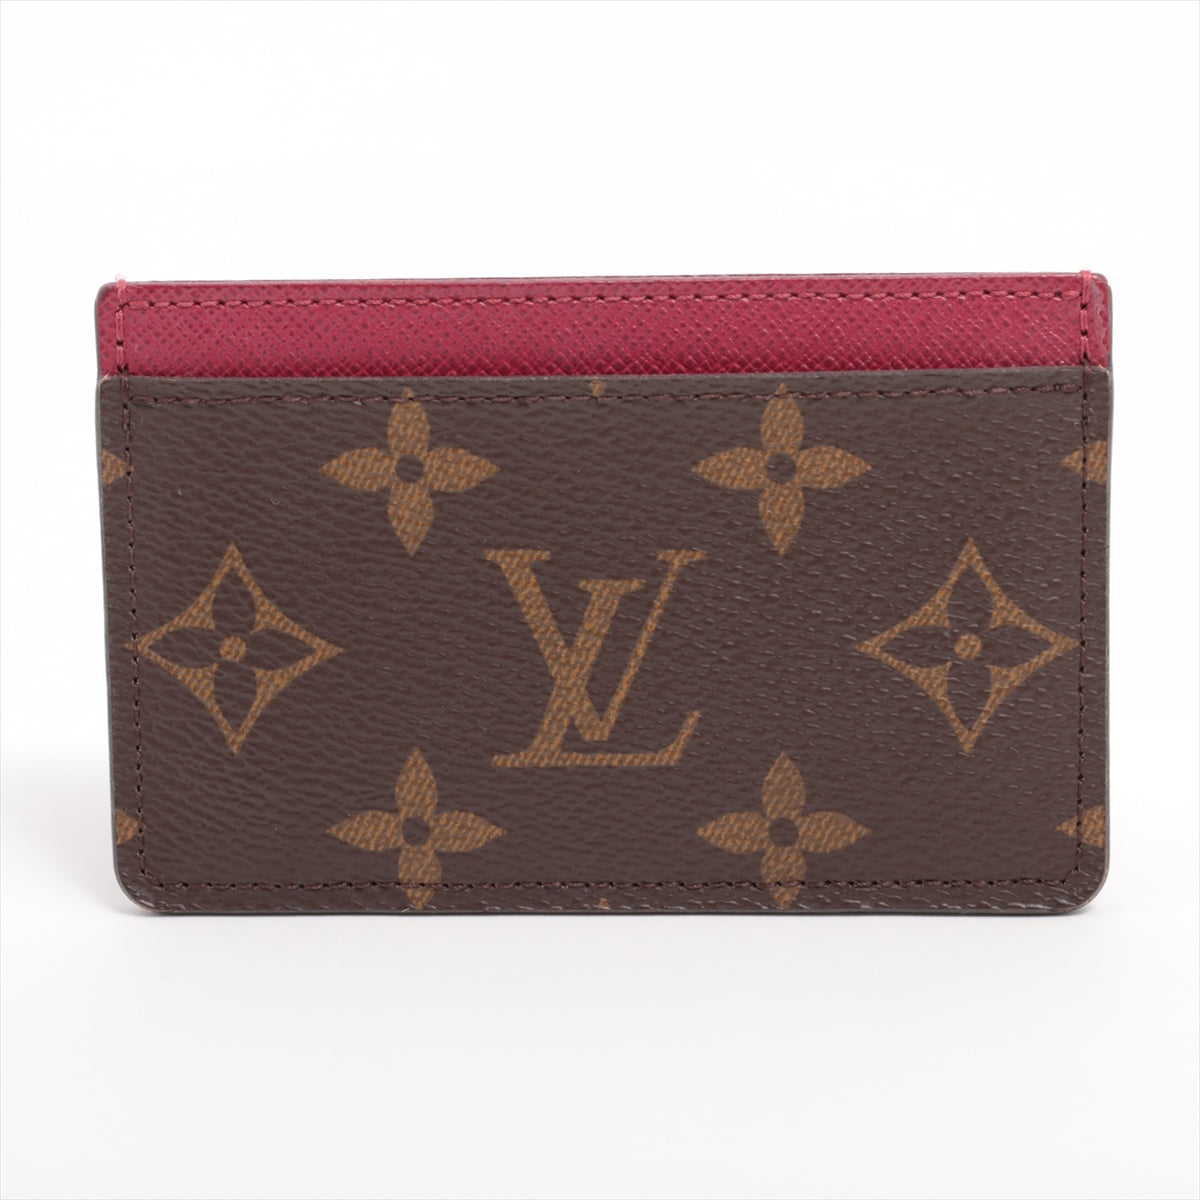 ロビのユニセックス財布小物一覧LOUIS VUITTON ヴィトン カードケース ポルトカルトサーンプル